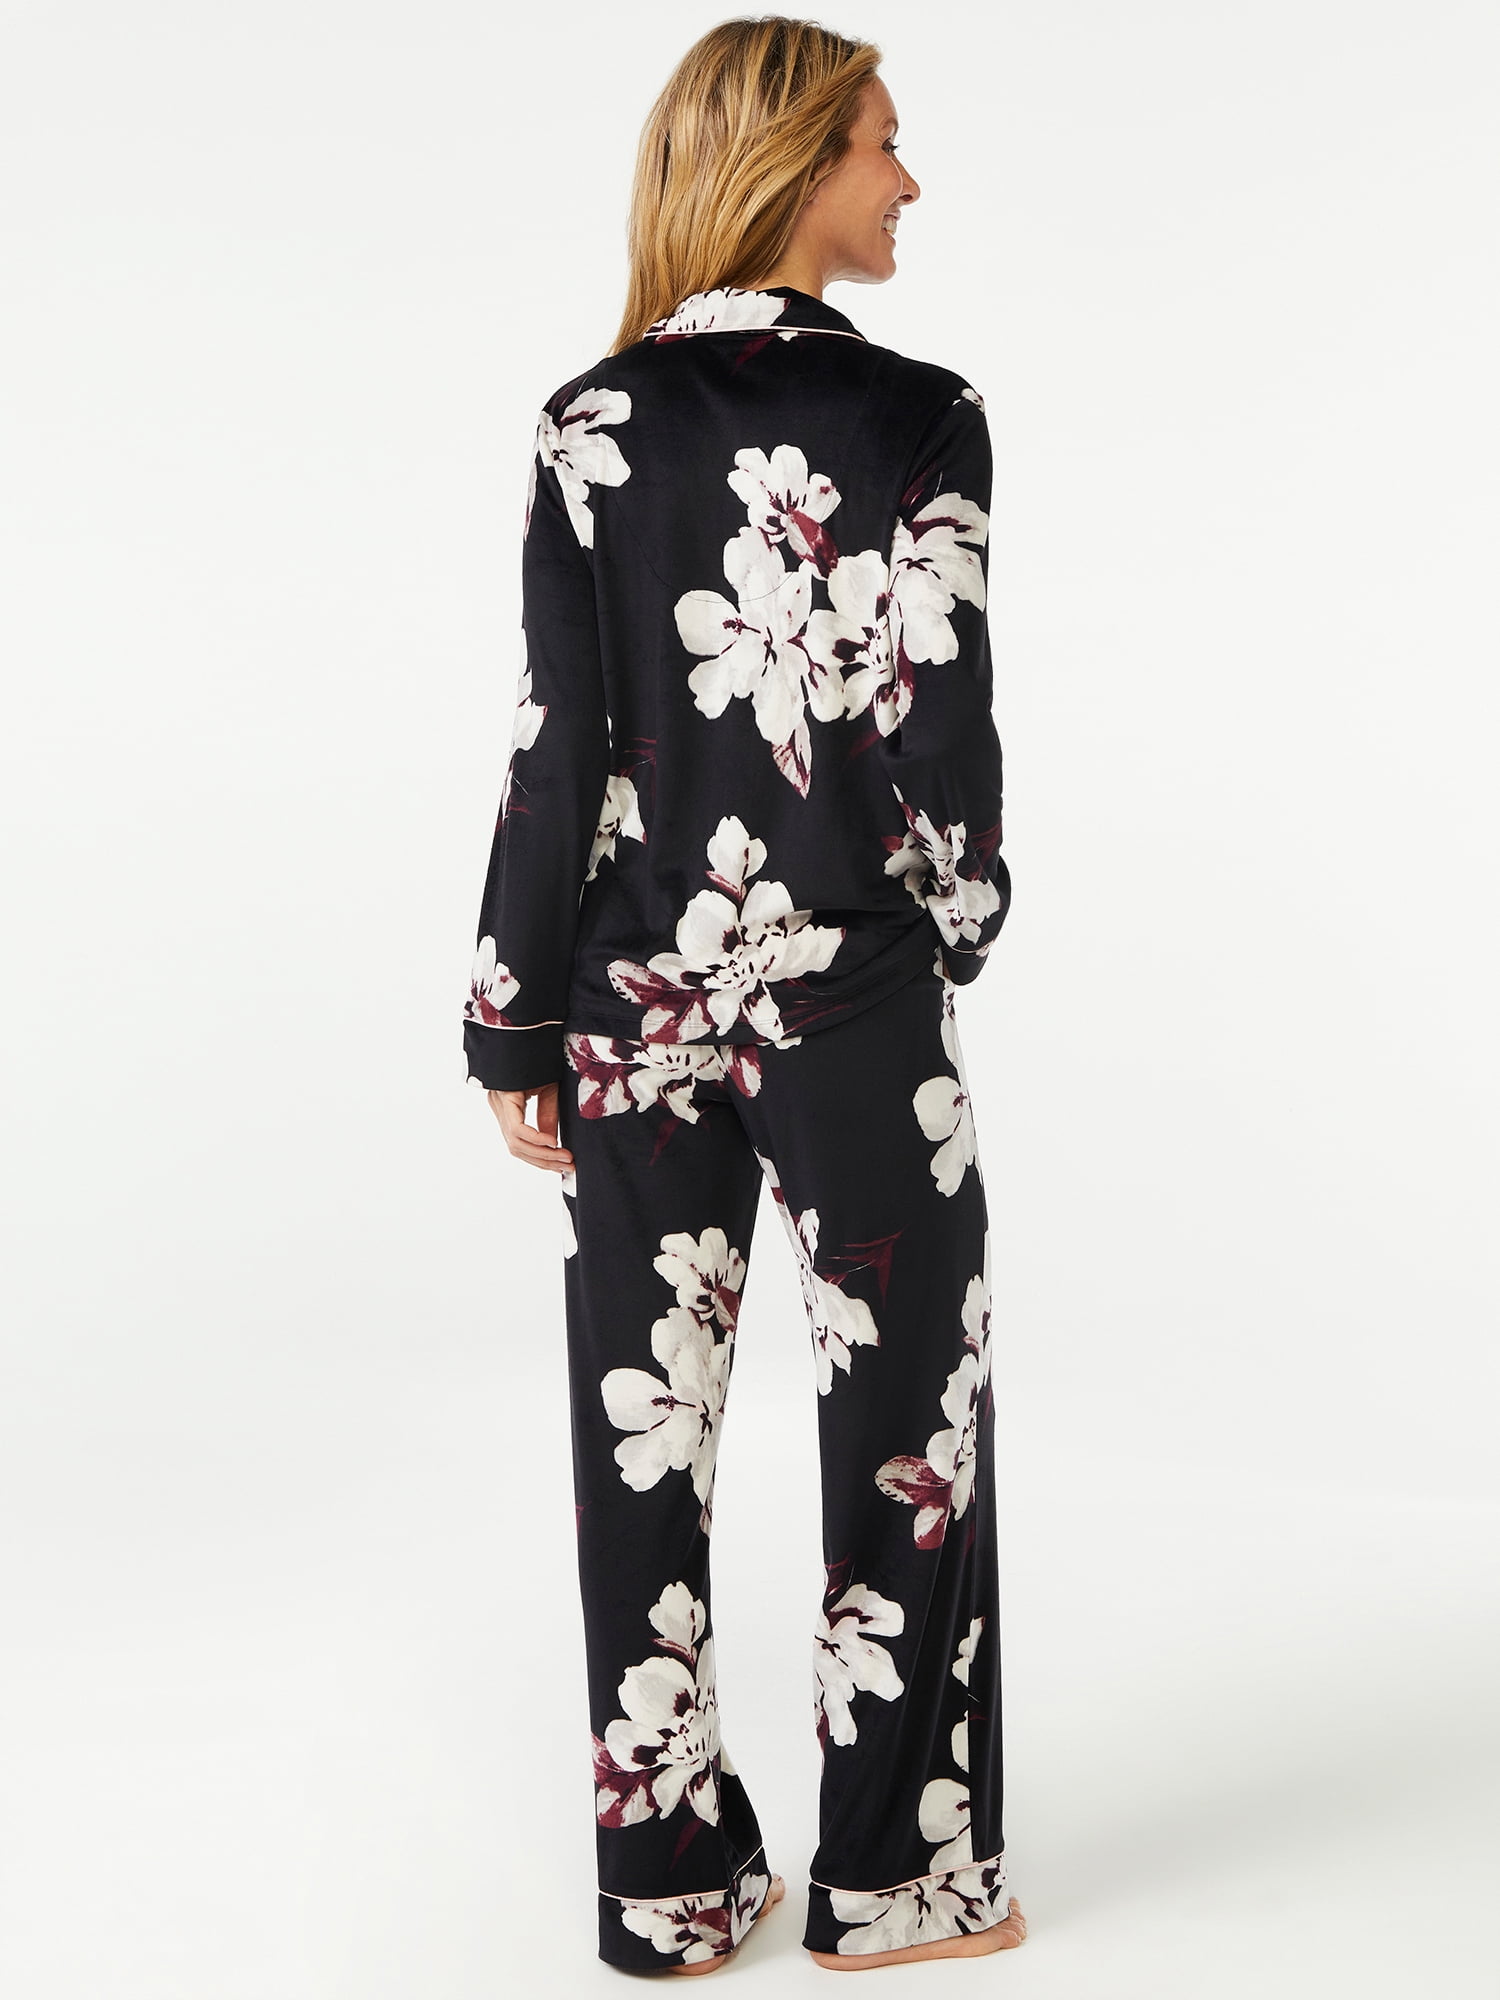 Joyspun Women's Velour Knit Pajama Set, 2-Piece, Sizes S to 5X